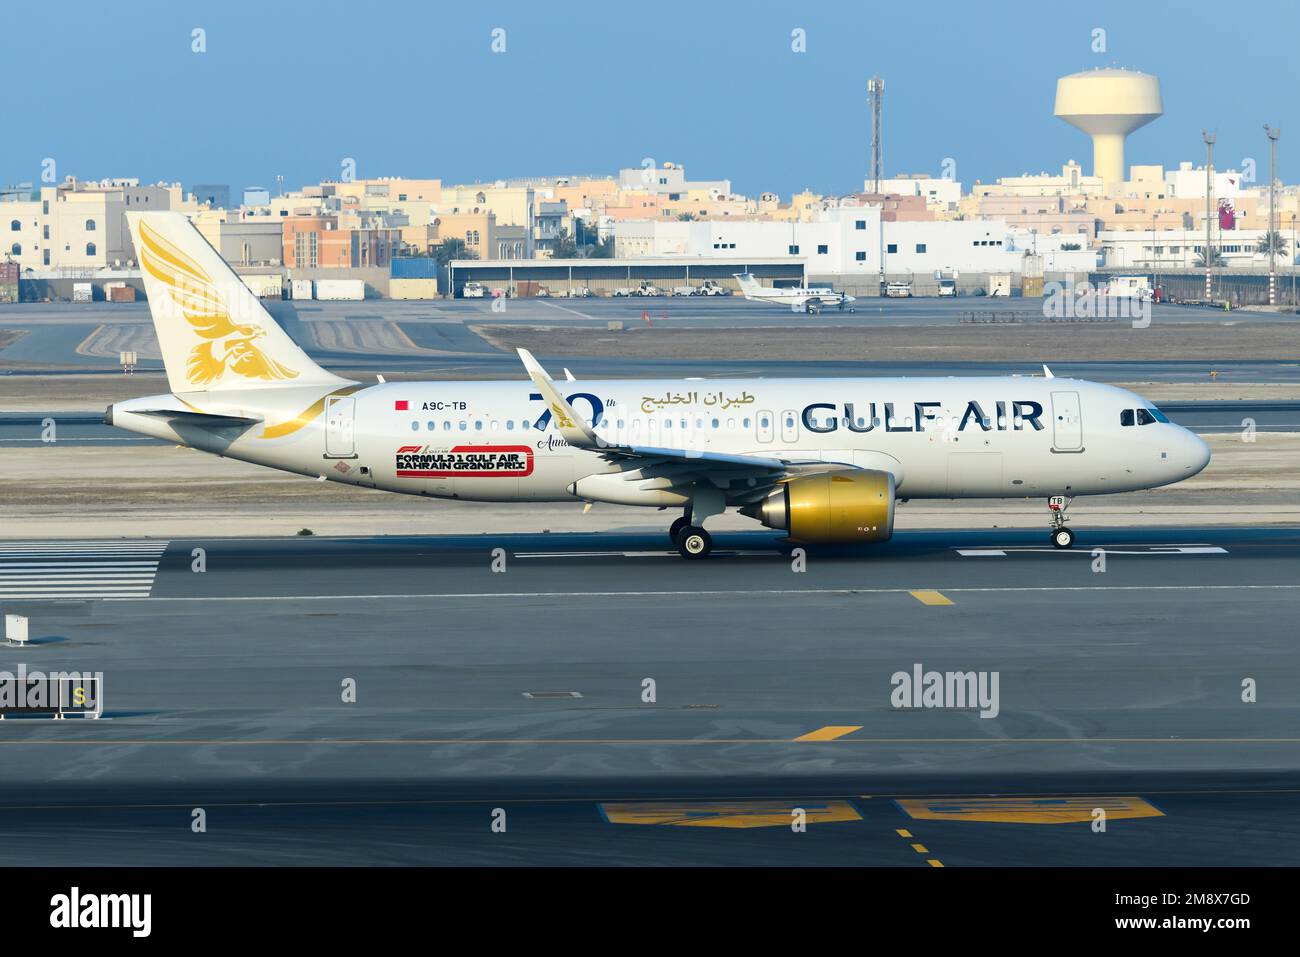 Gulf Air Airbus A320 aereo tassando all'aeroporto di Bahrain. Velivolo A320neo di Gulfair, conosciuto principalmente come Gulf Air. Foto Stock